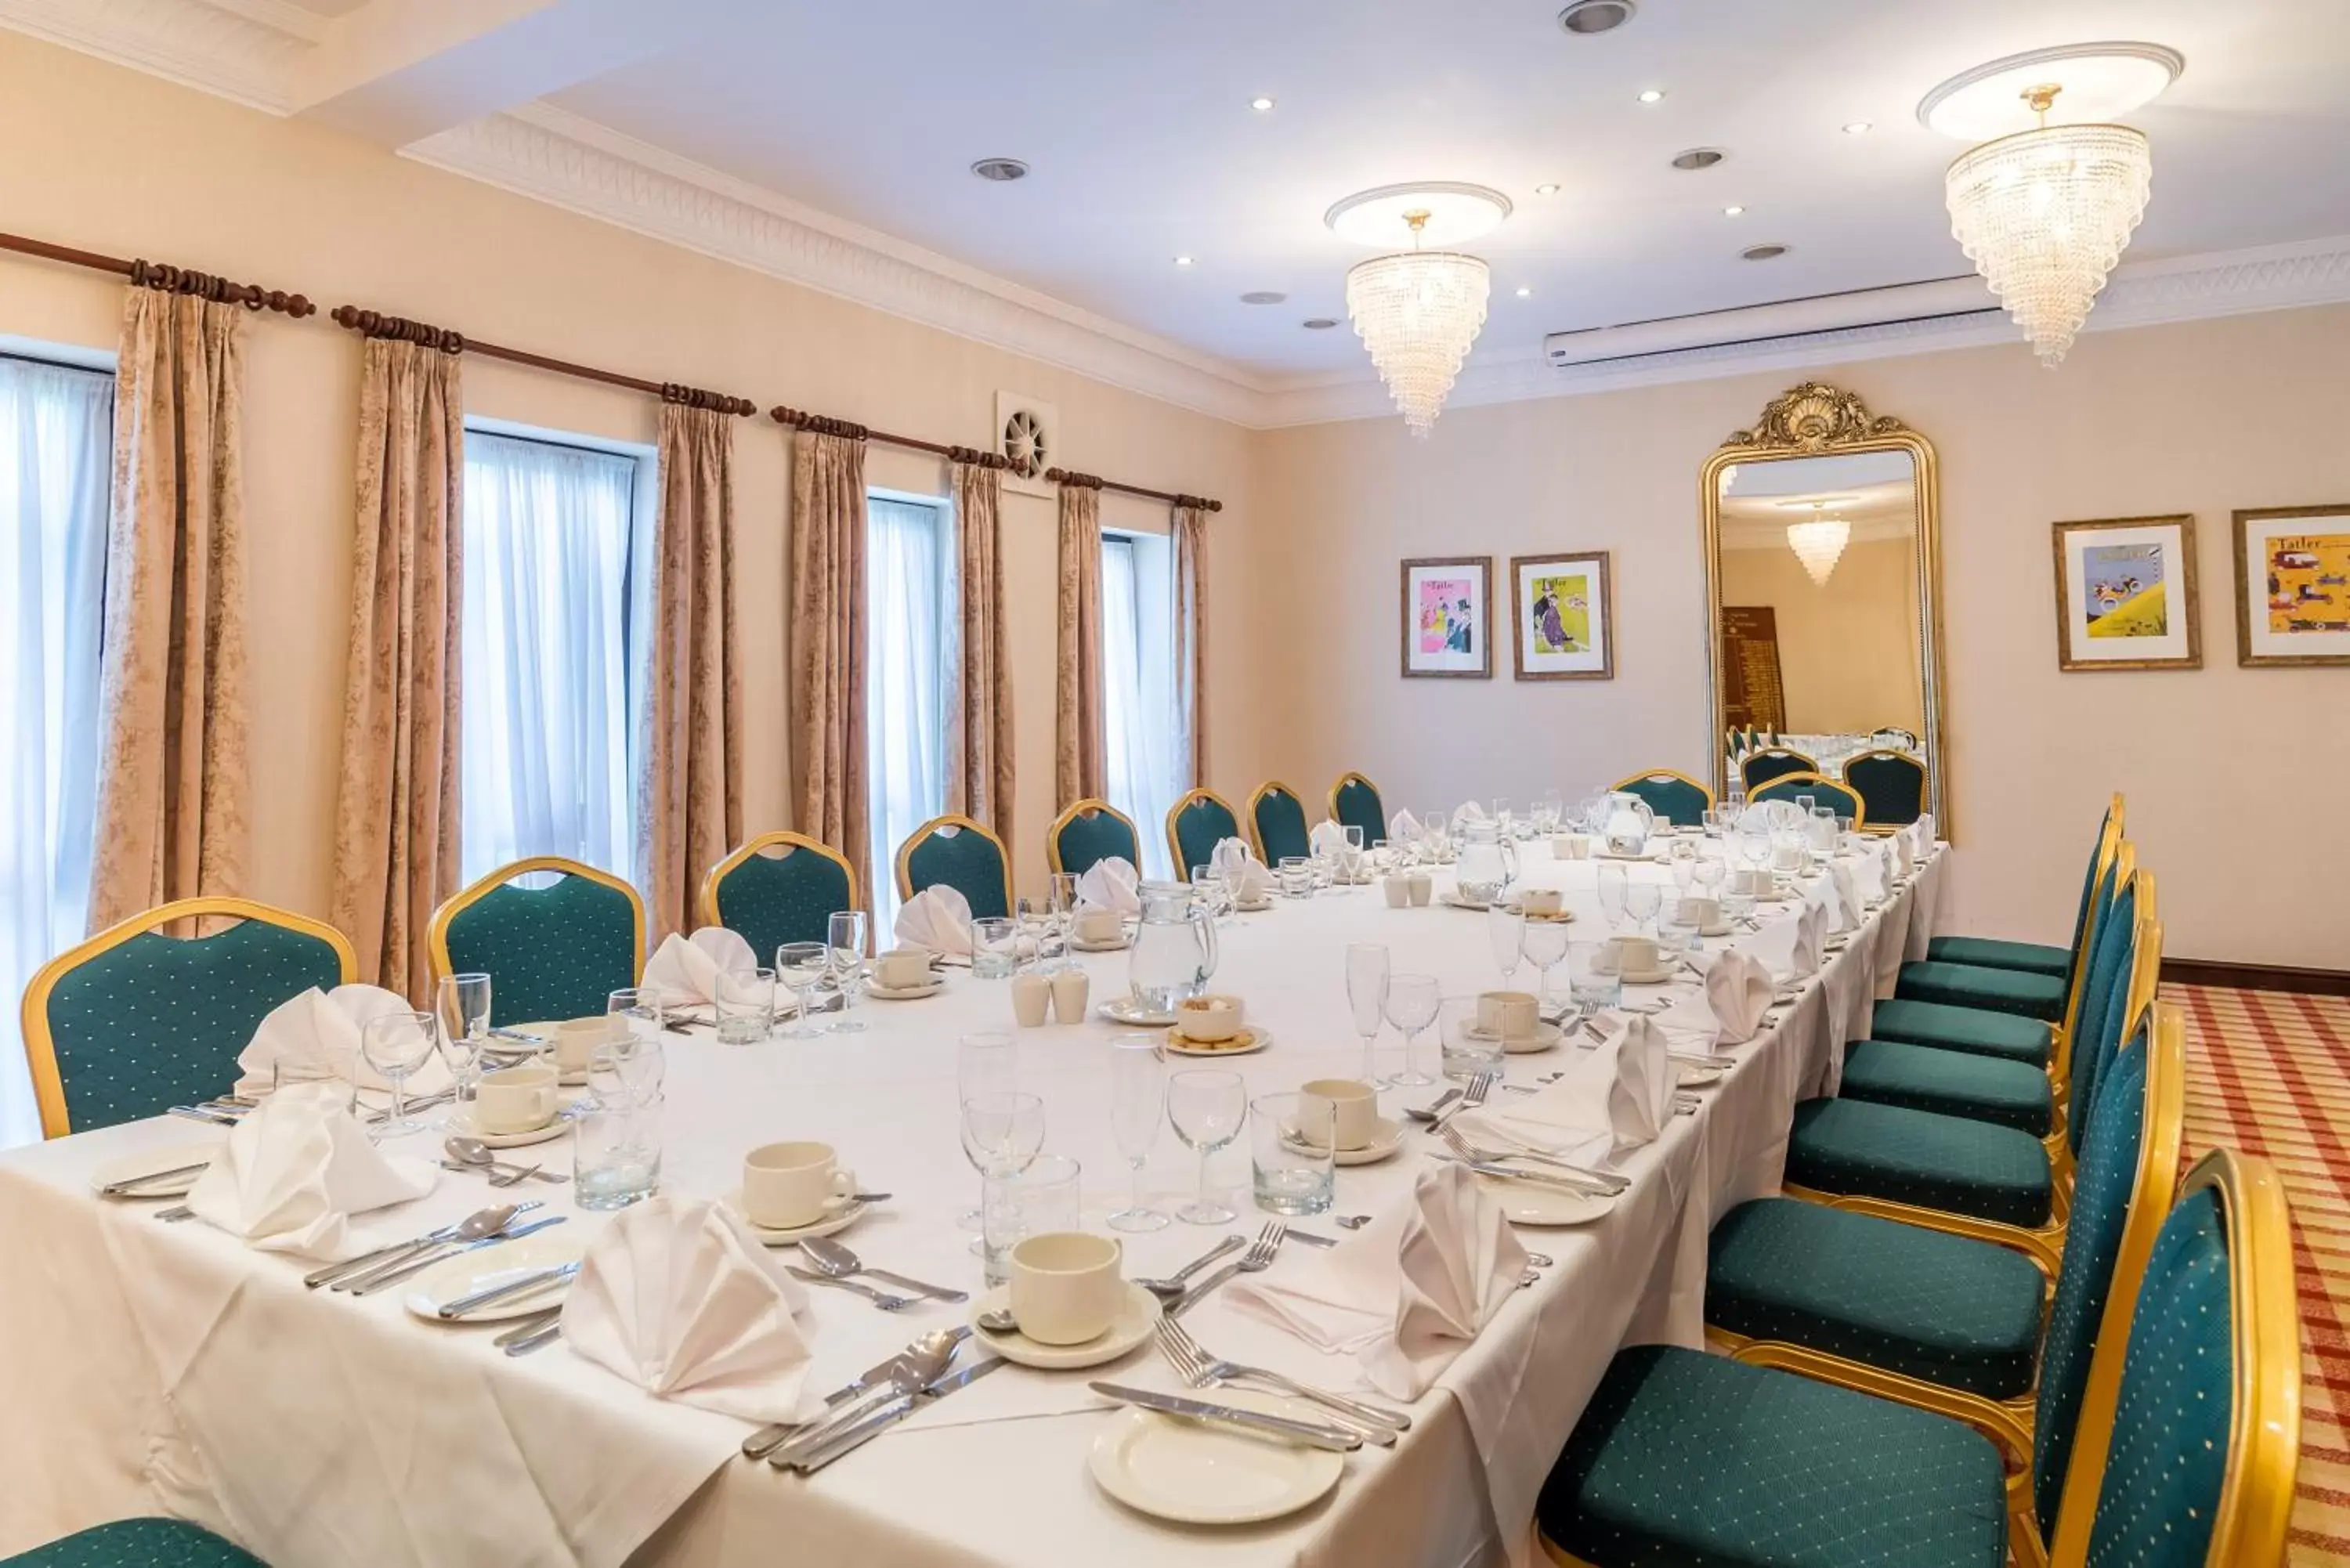 Banquet/Function facilities, Banquet Facilities in Parkway Hotel & Spa